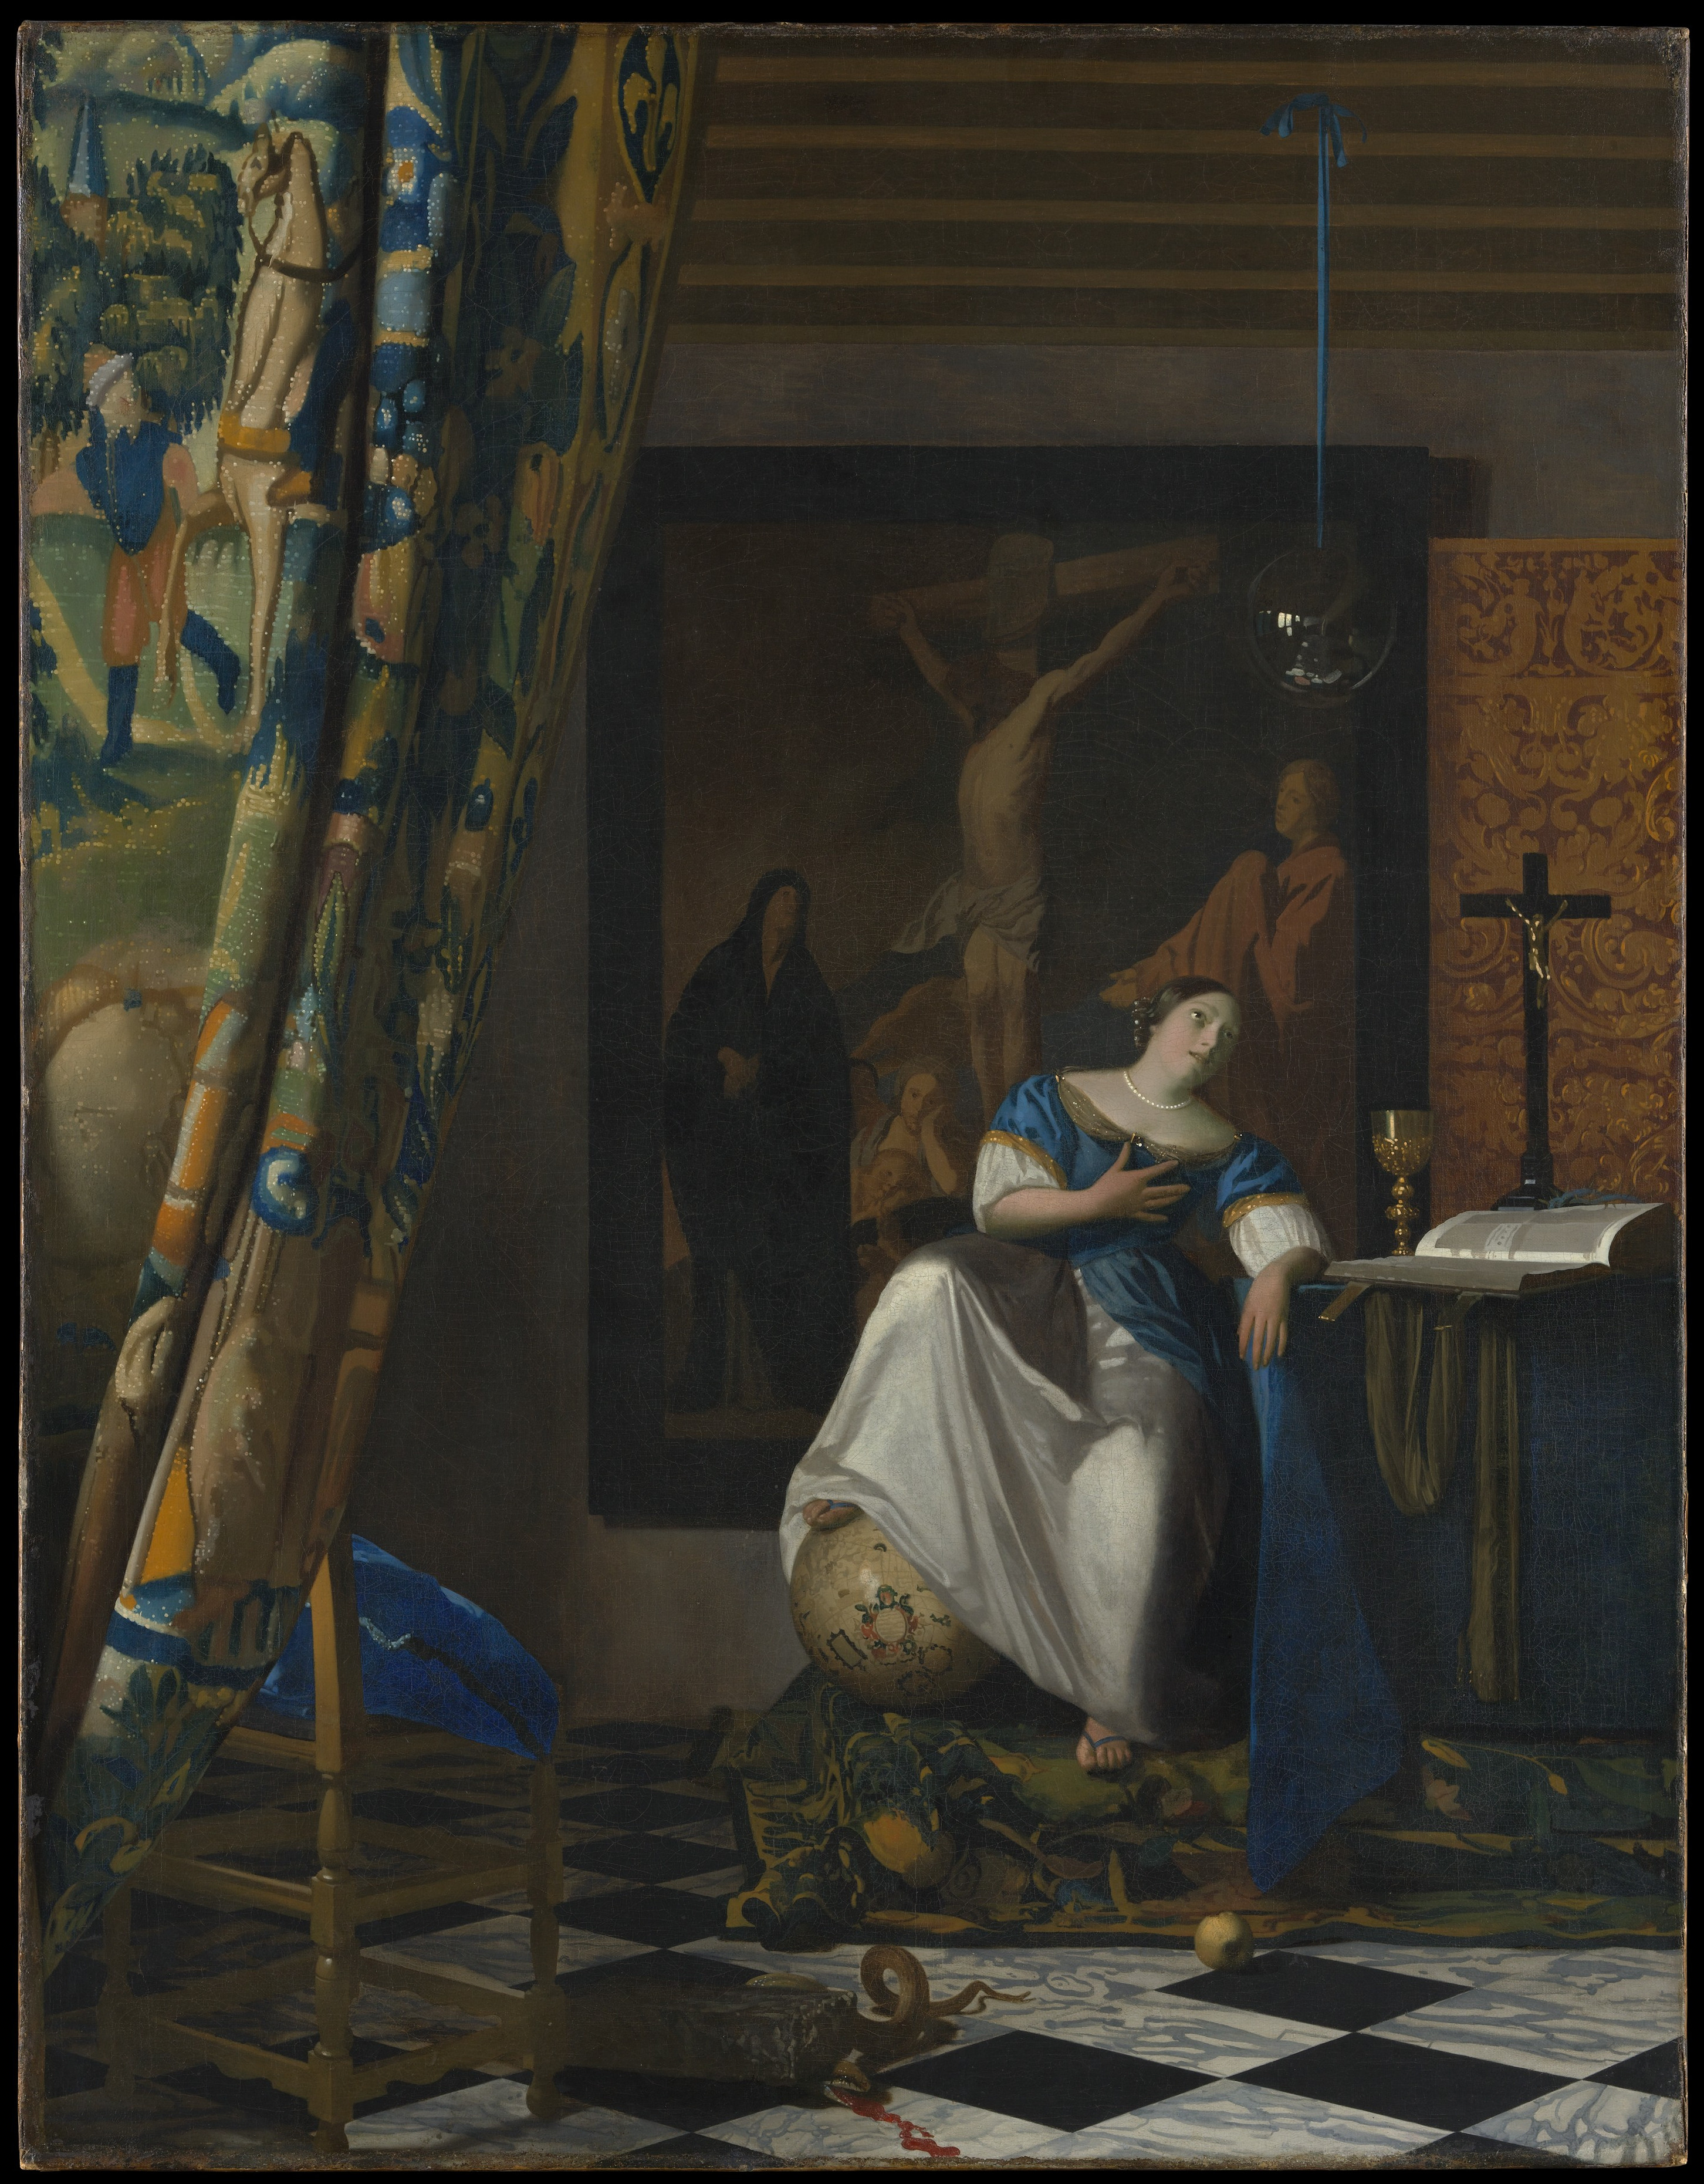 Alegoria da Fé by Johannes Vermeer - 1671-1674 - 114.3 x 88.9 cm 